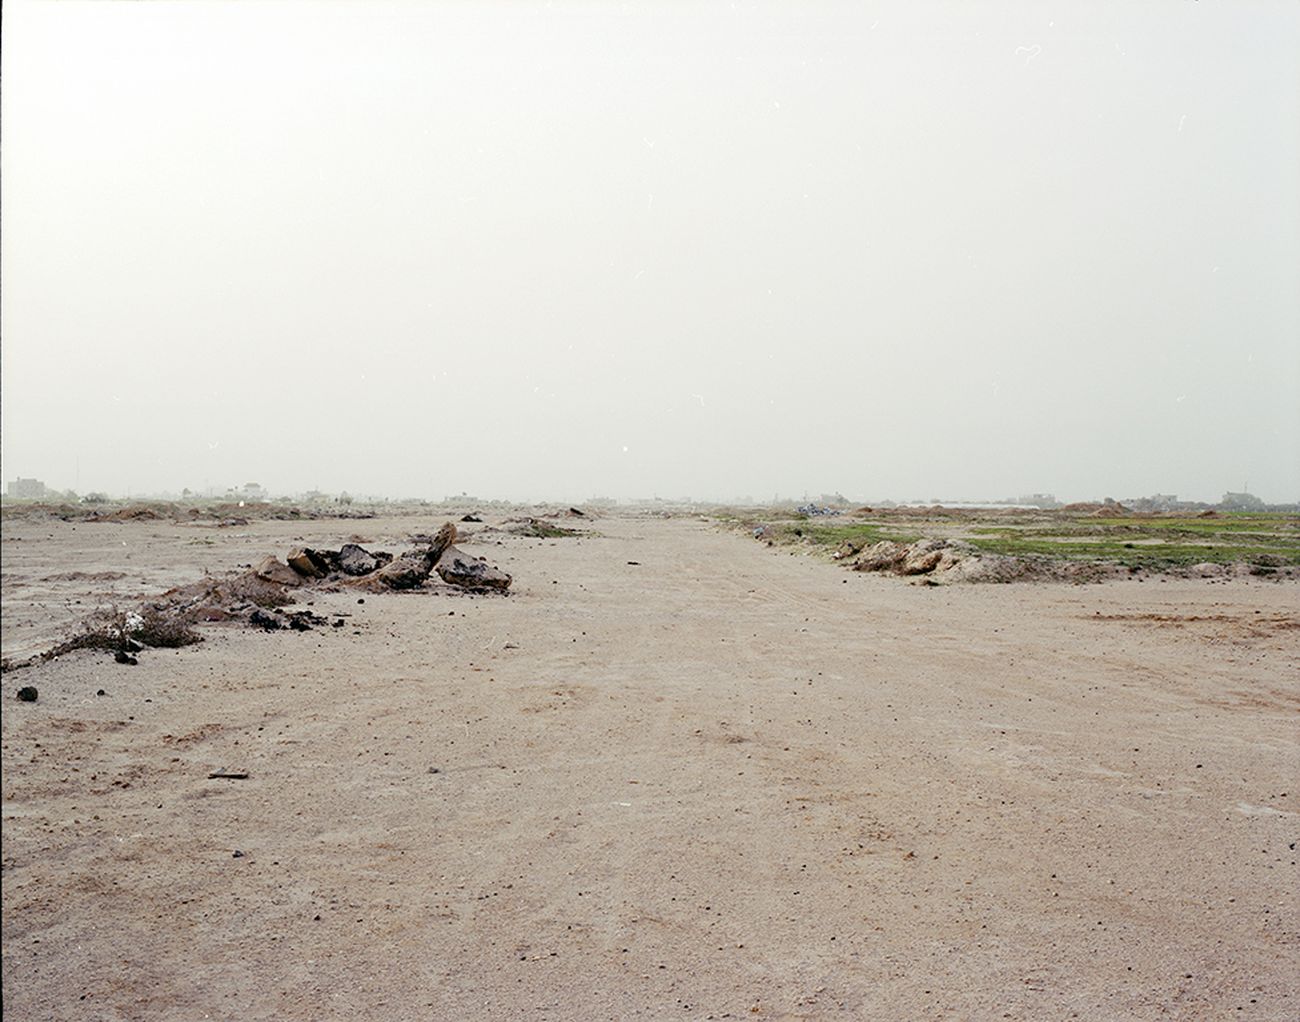 Antonio Ottomanelli, Collateral Landscape – Gaza, 2014